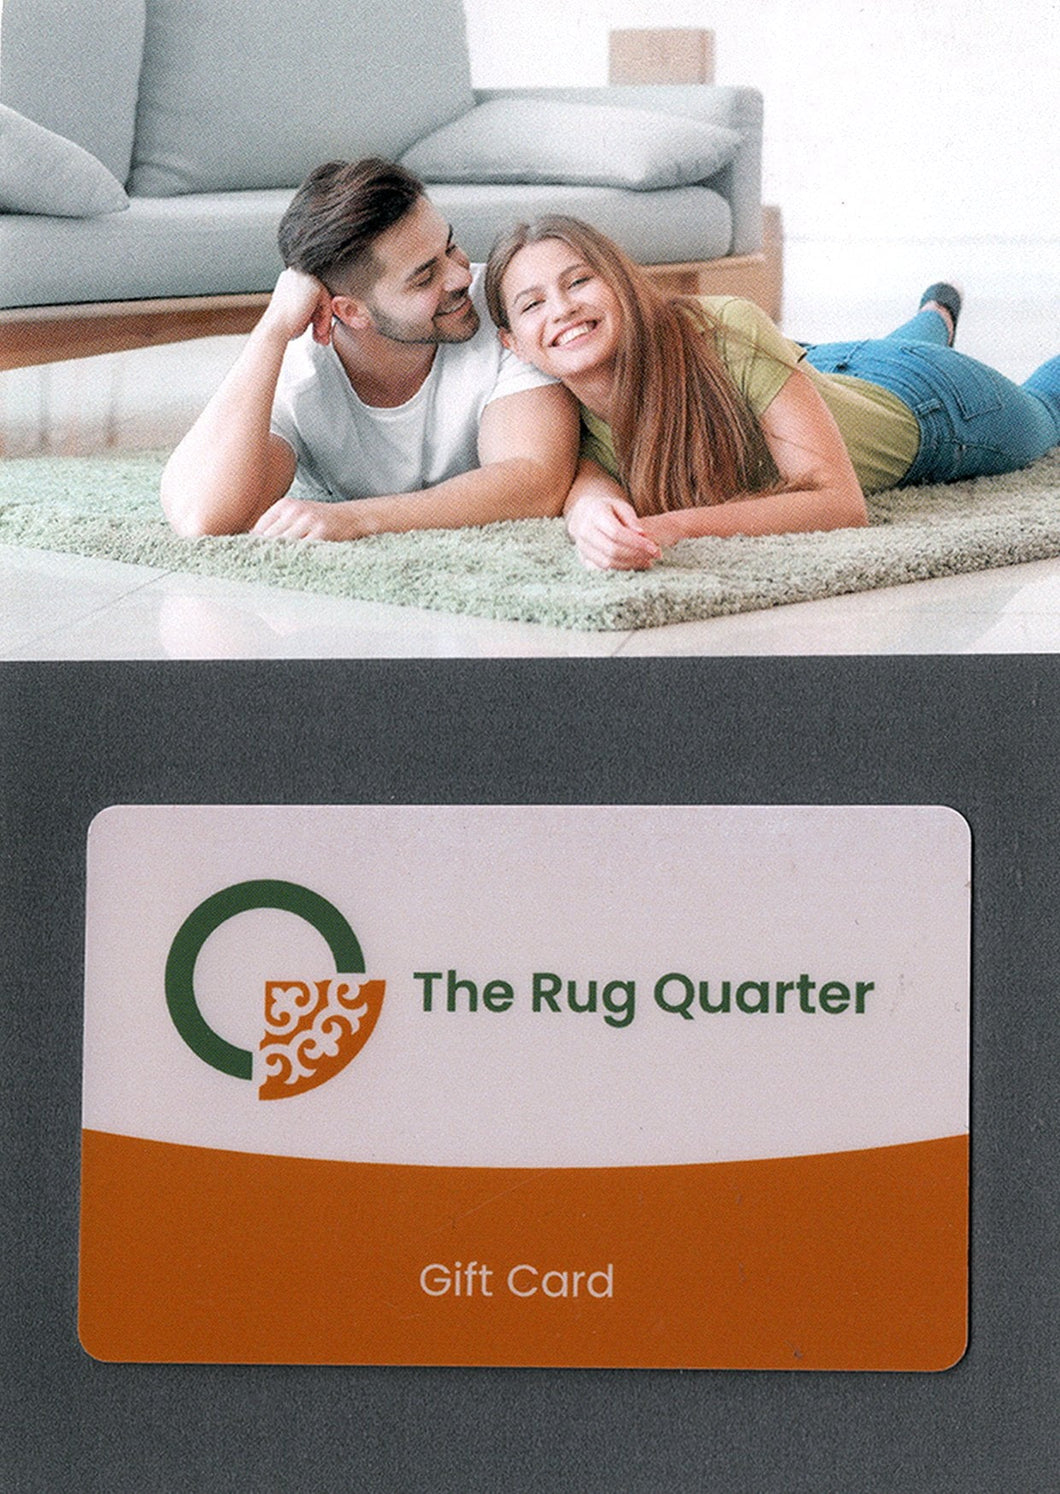 Rug Quarter eGift Card Gift card, Gift ideas, Gift voucher Gift Cards The Rug Quarter 